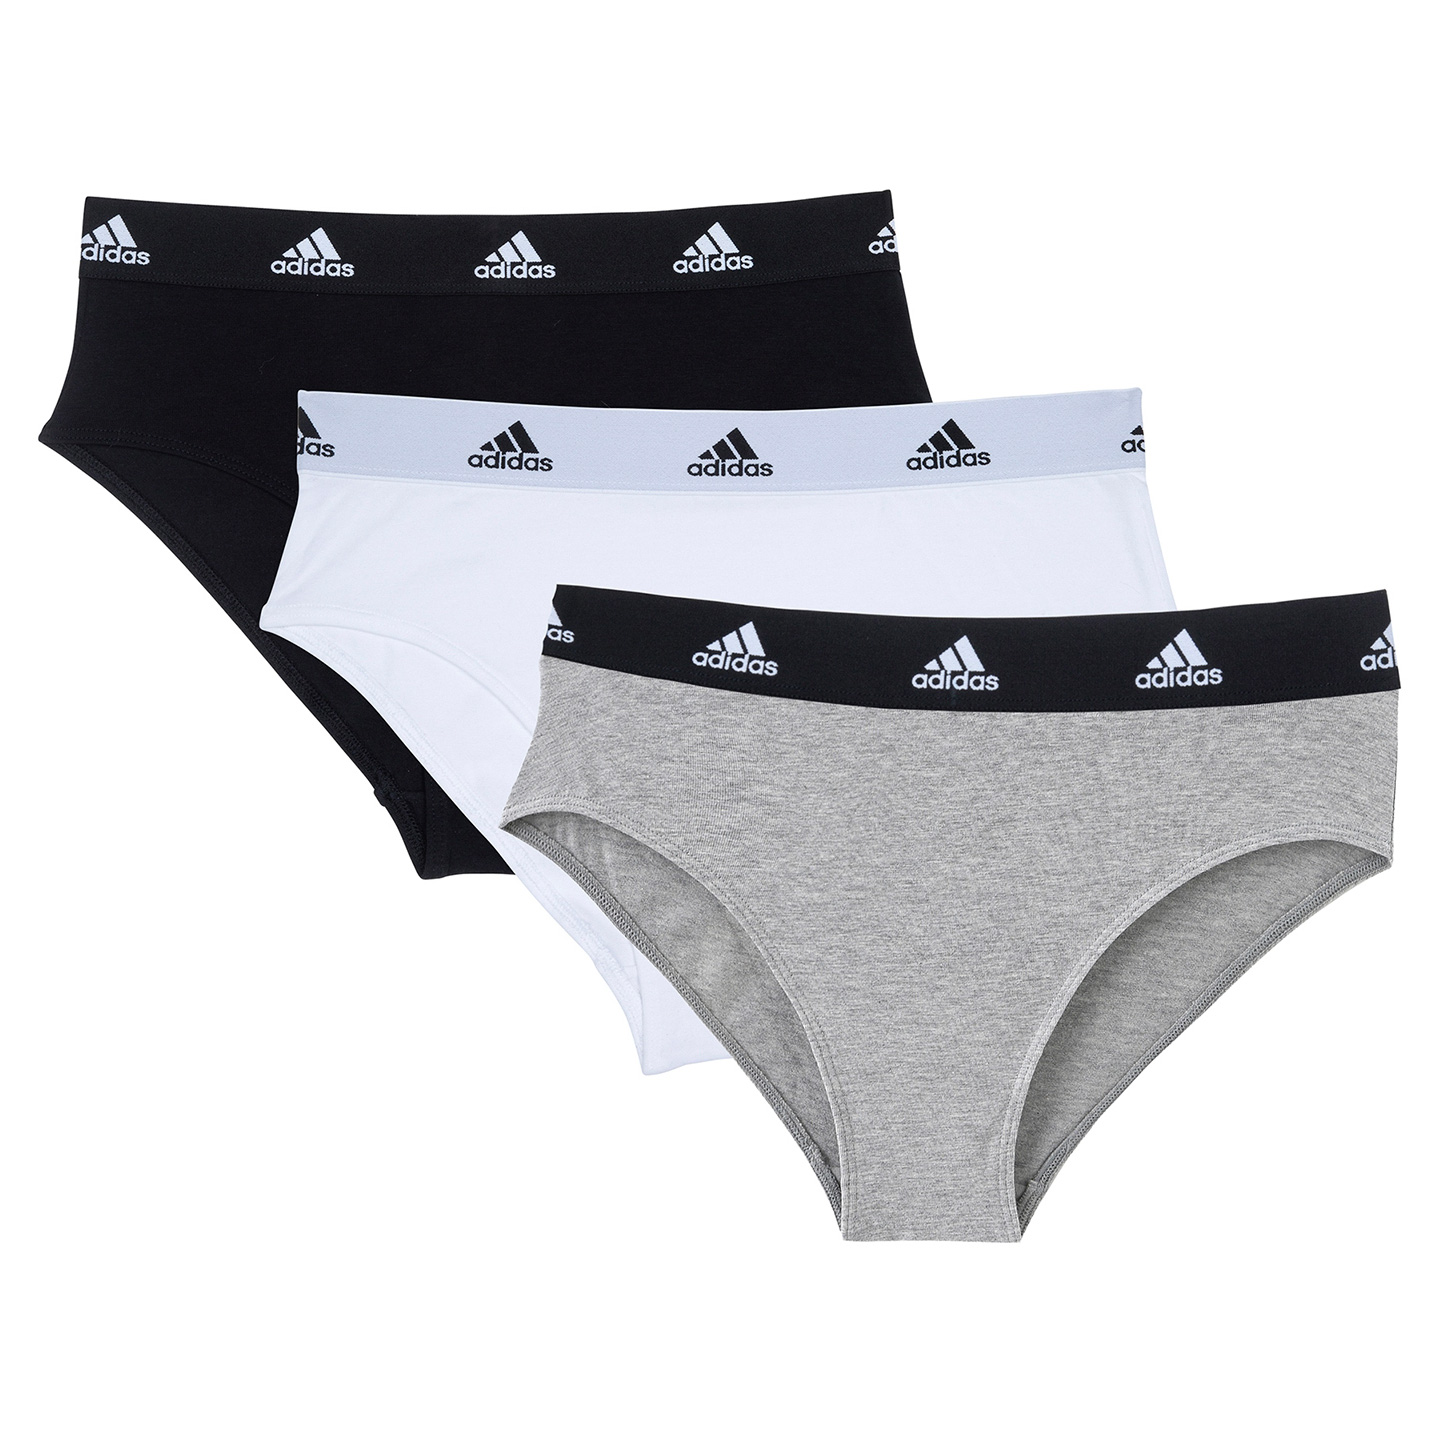 Produktbild von adidas Sports Underwear Cotton Logo Bikini Unterhose Damen - 3er Pack - 926-assorted